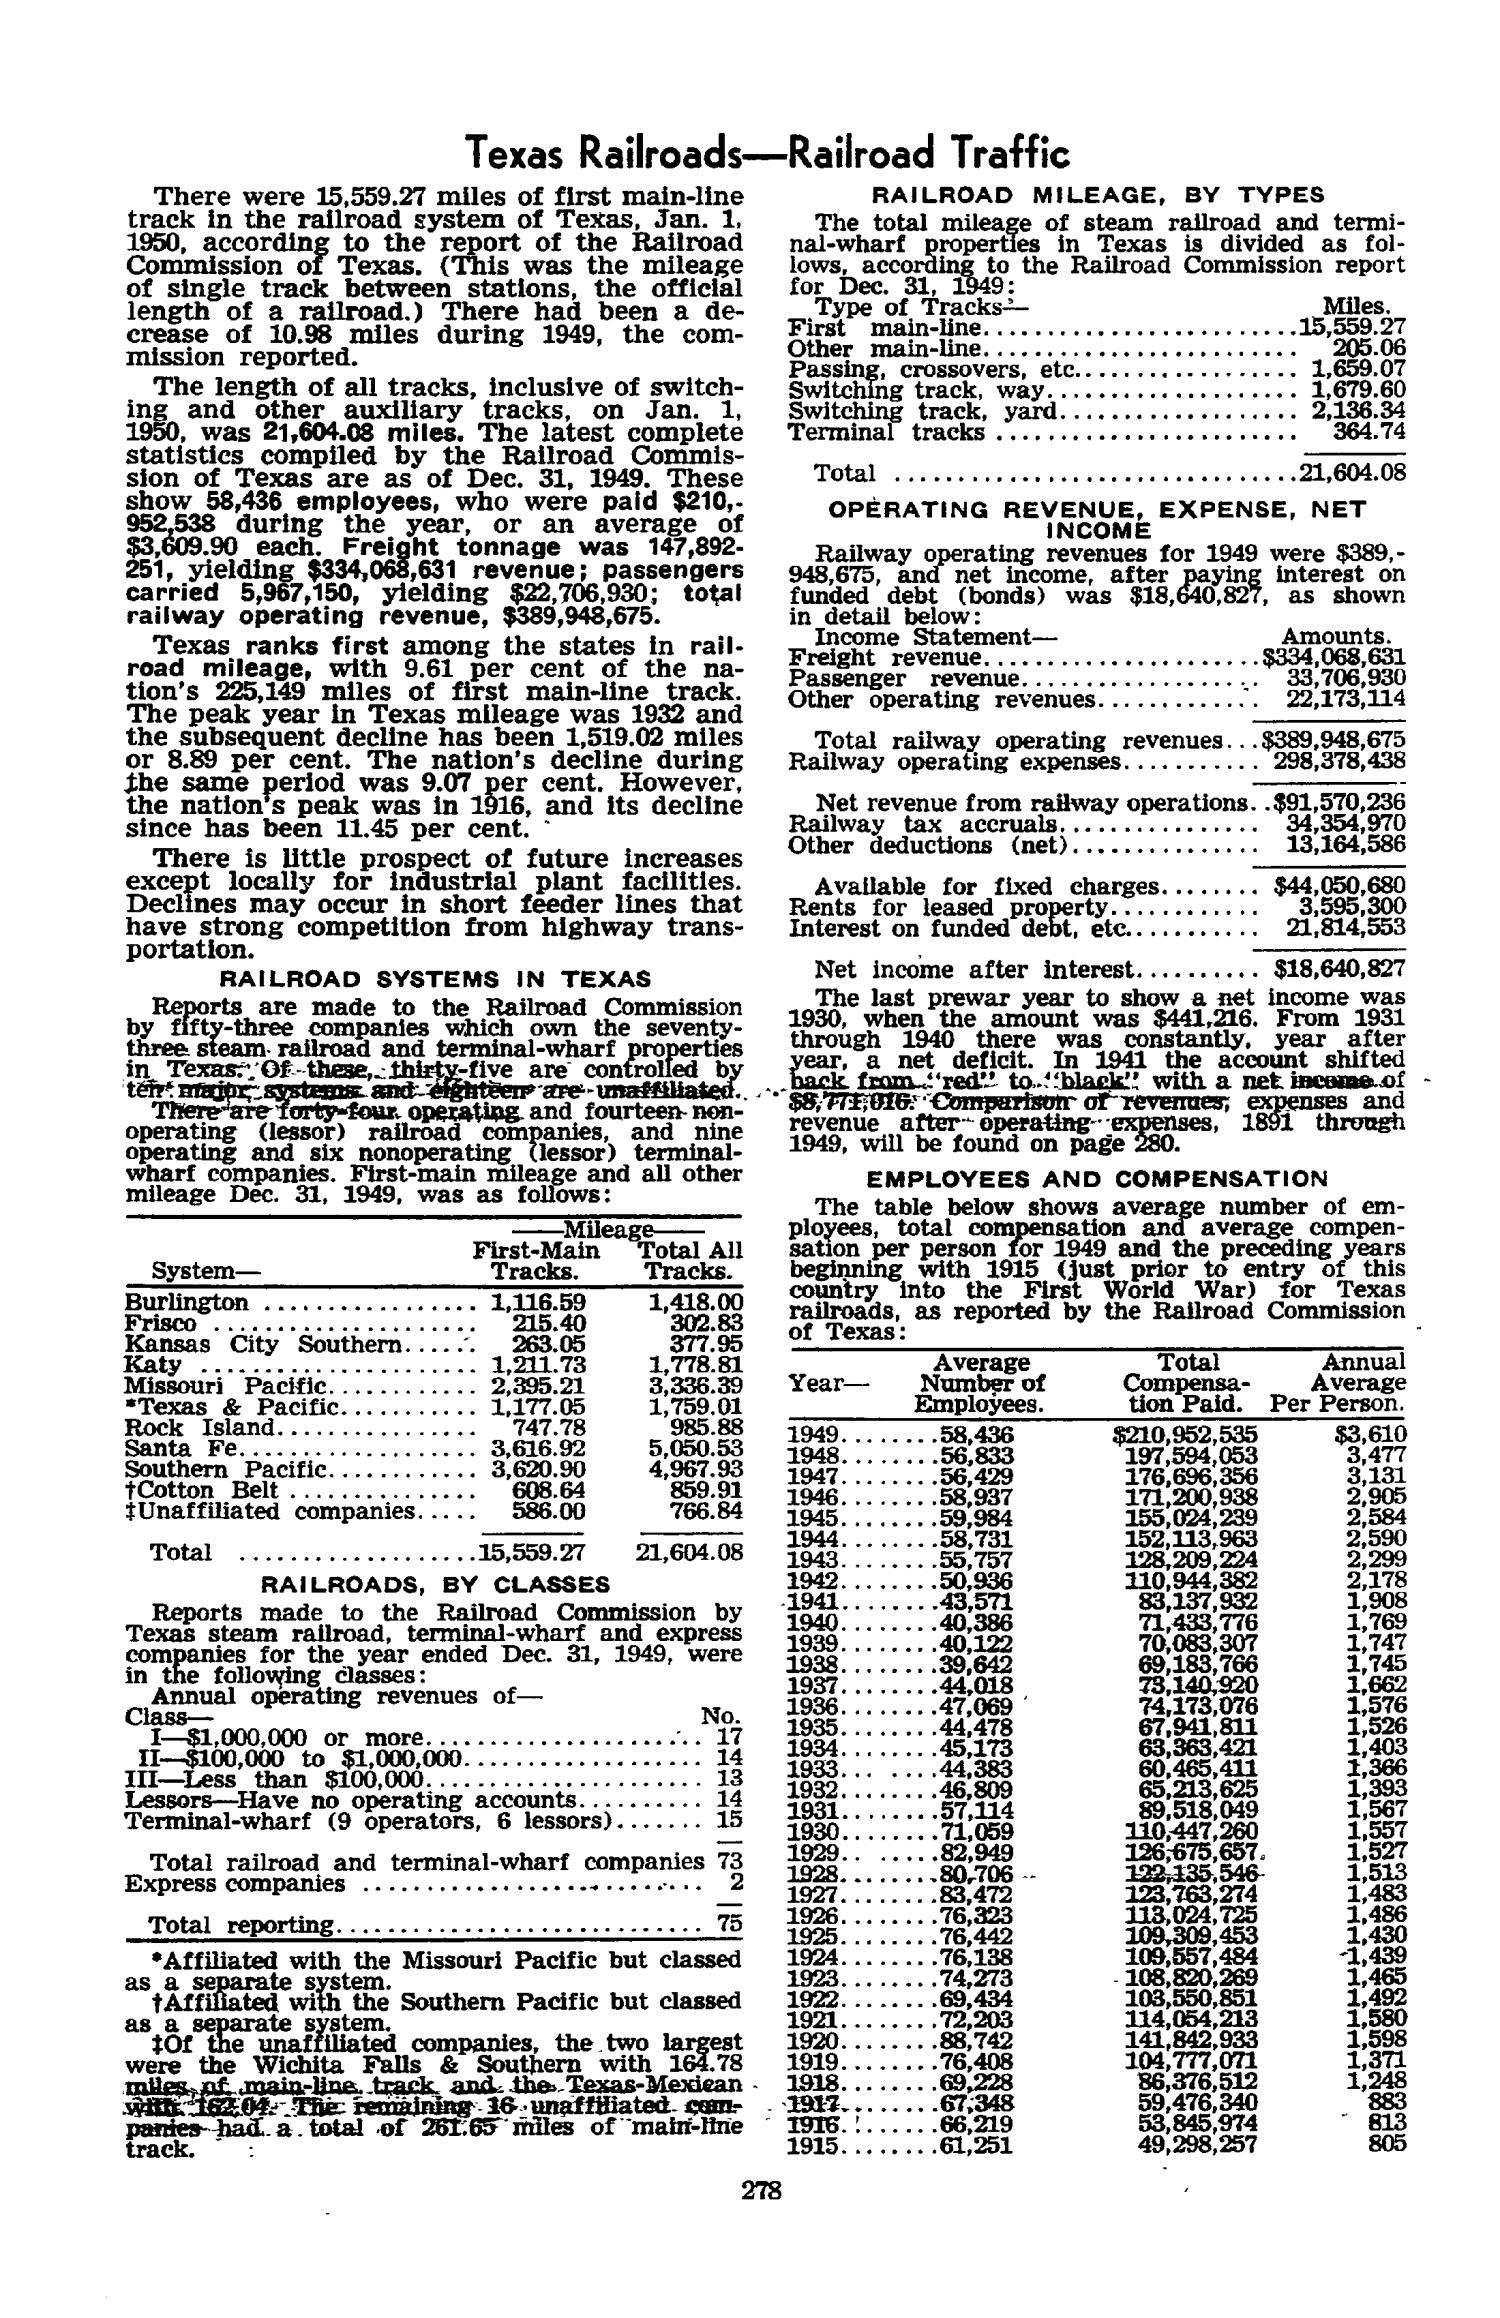 Texas Almanac, 1952-1953
                                                
                                                    278
                                                